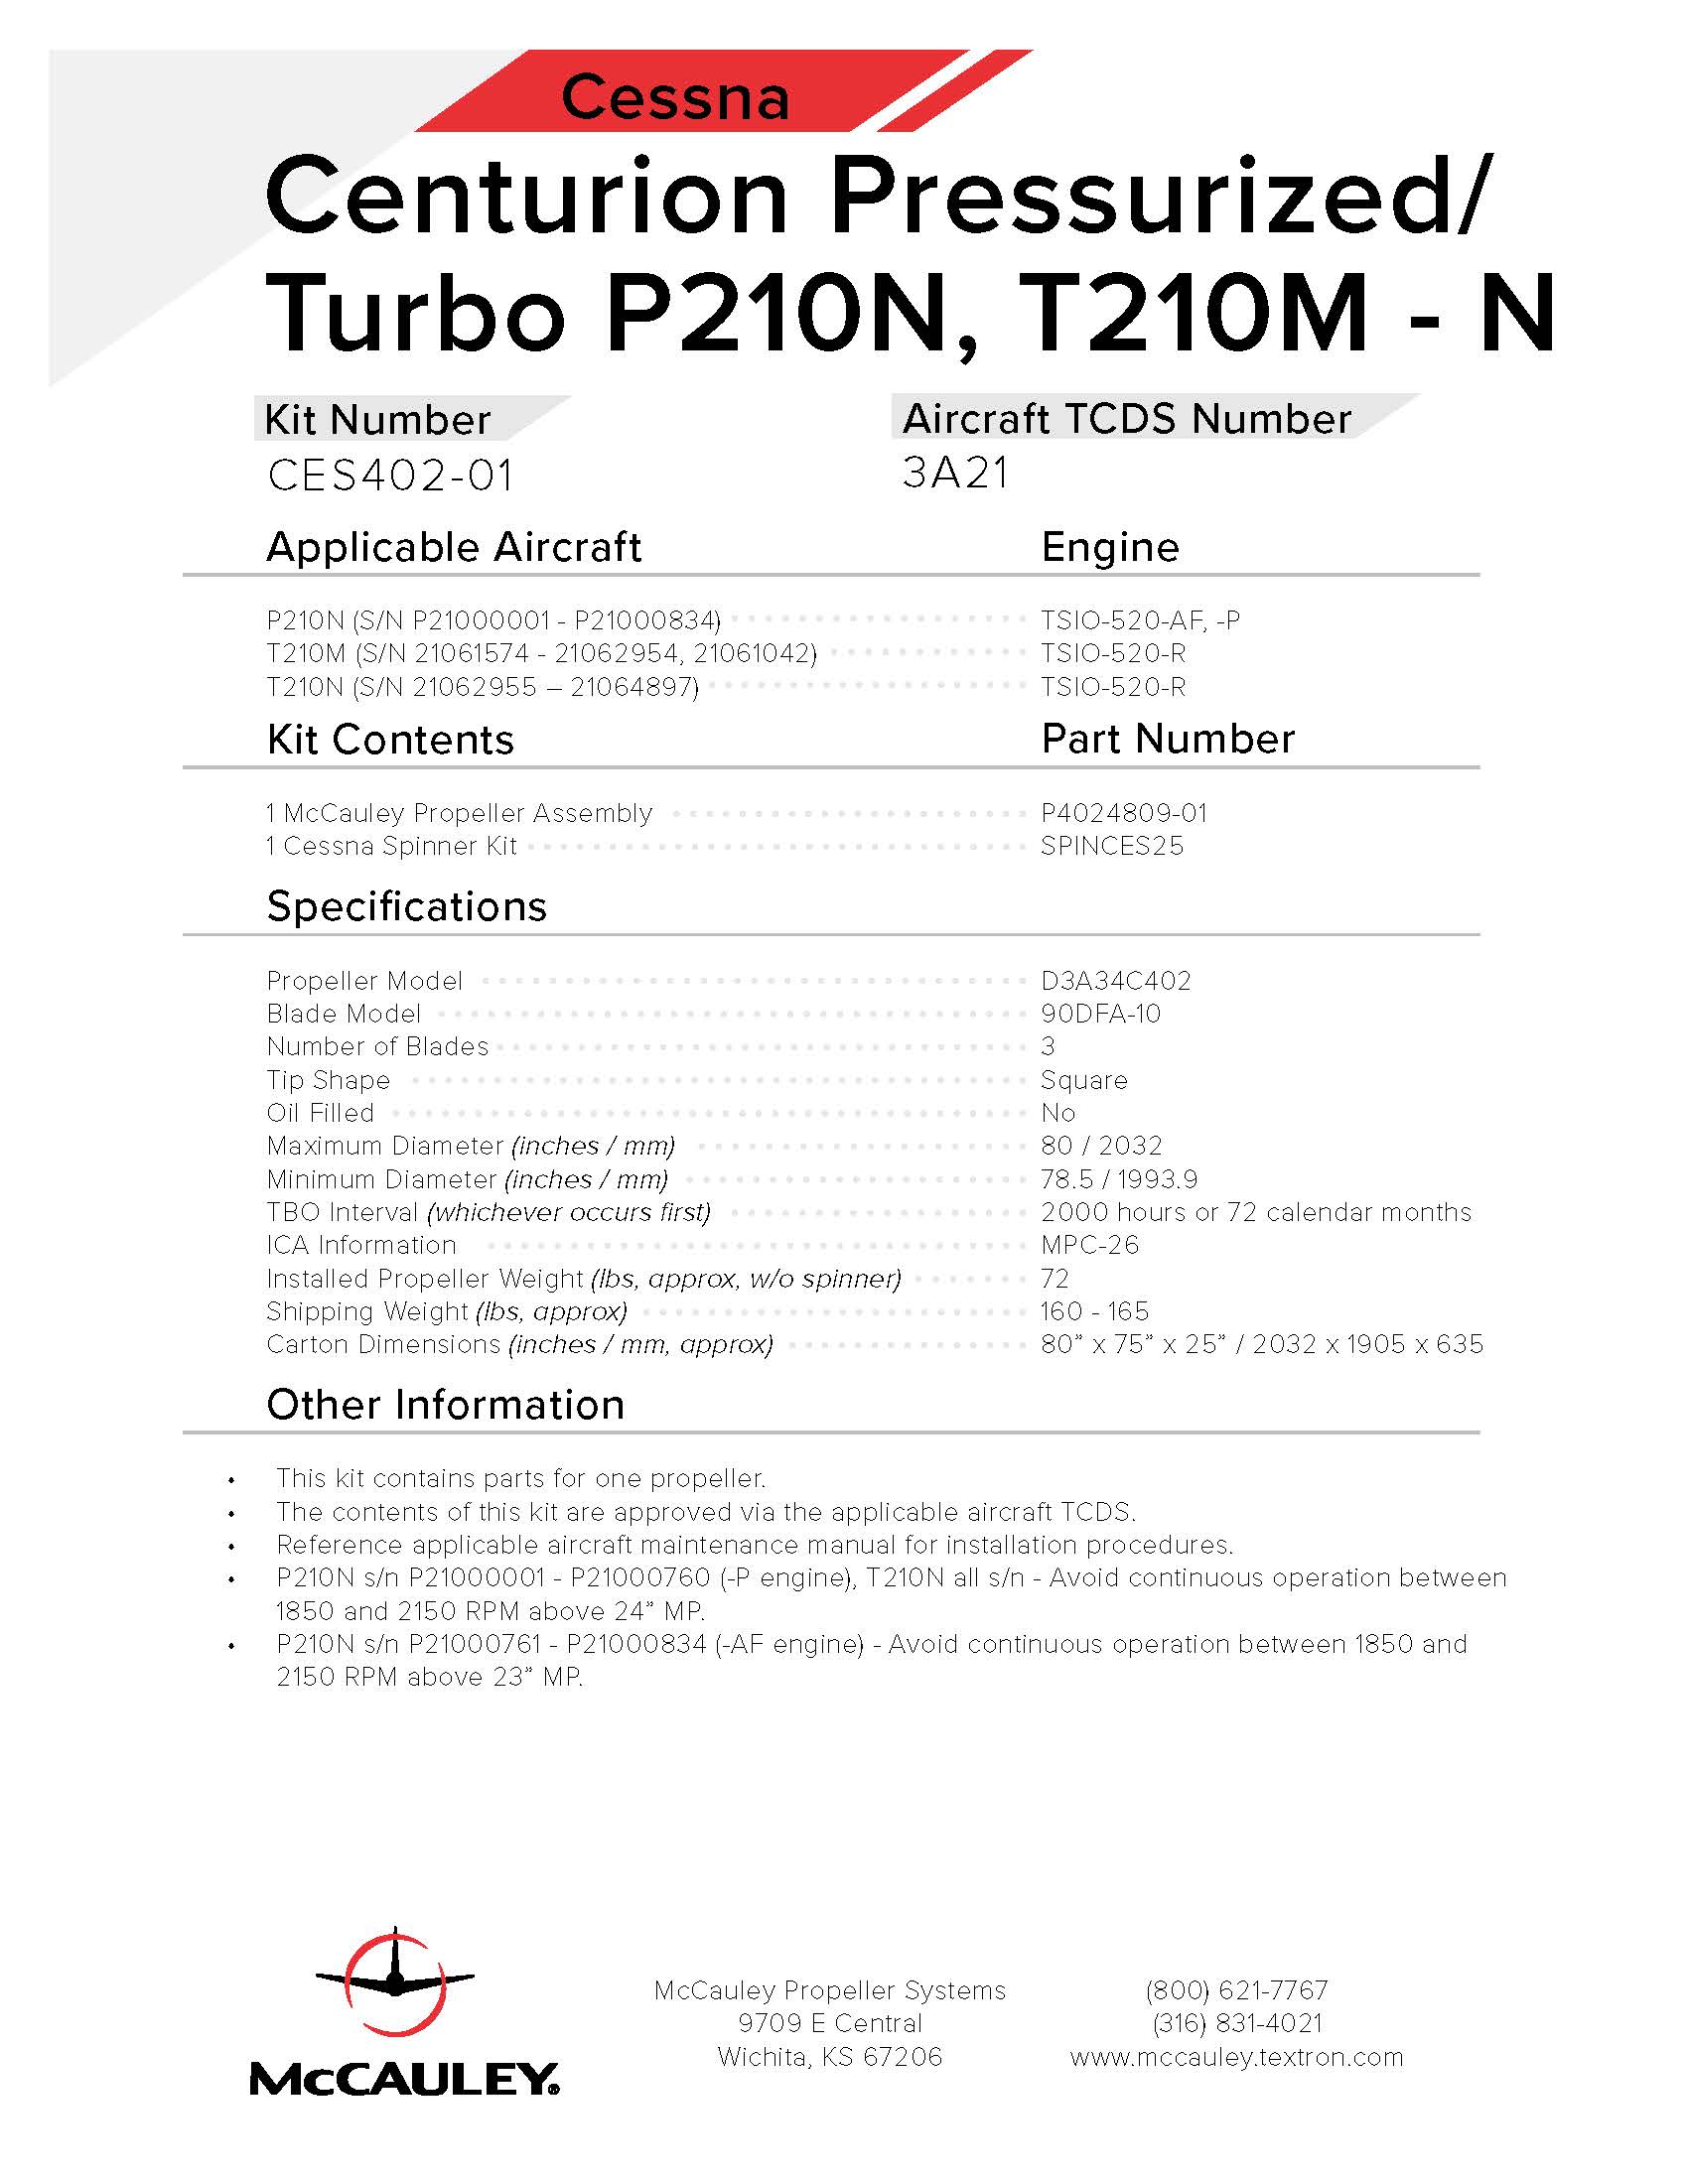 CESSNA-CENTURION-PRESSURIZED-TURBO-P210N-T210M-N-CES402-01-PAGE-1